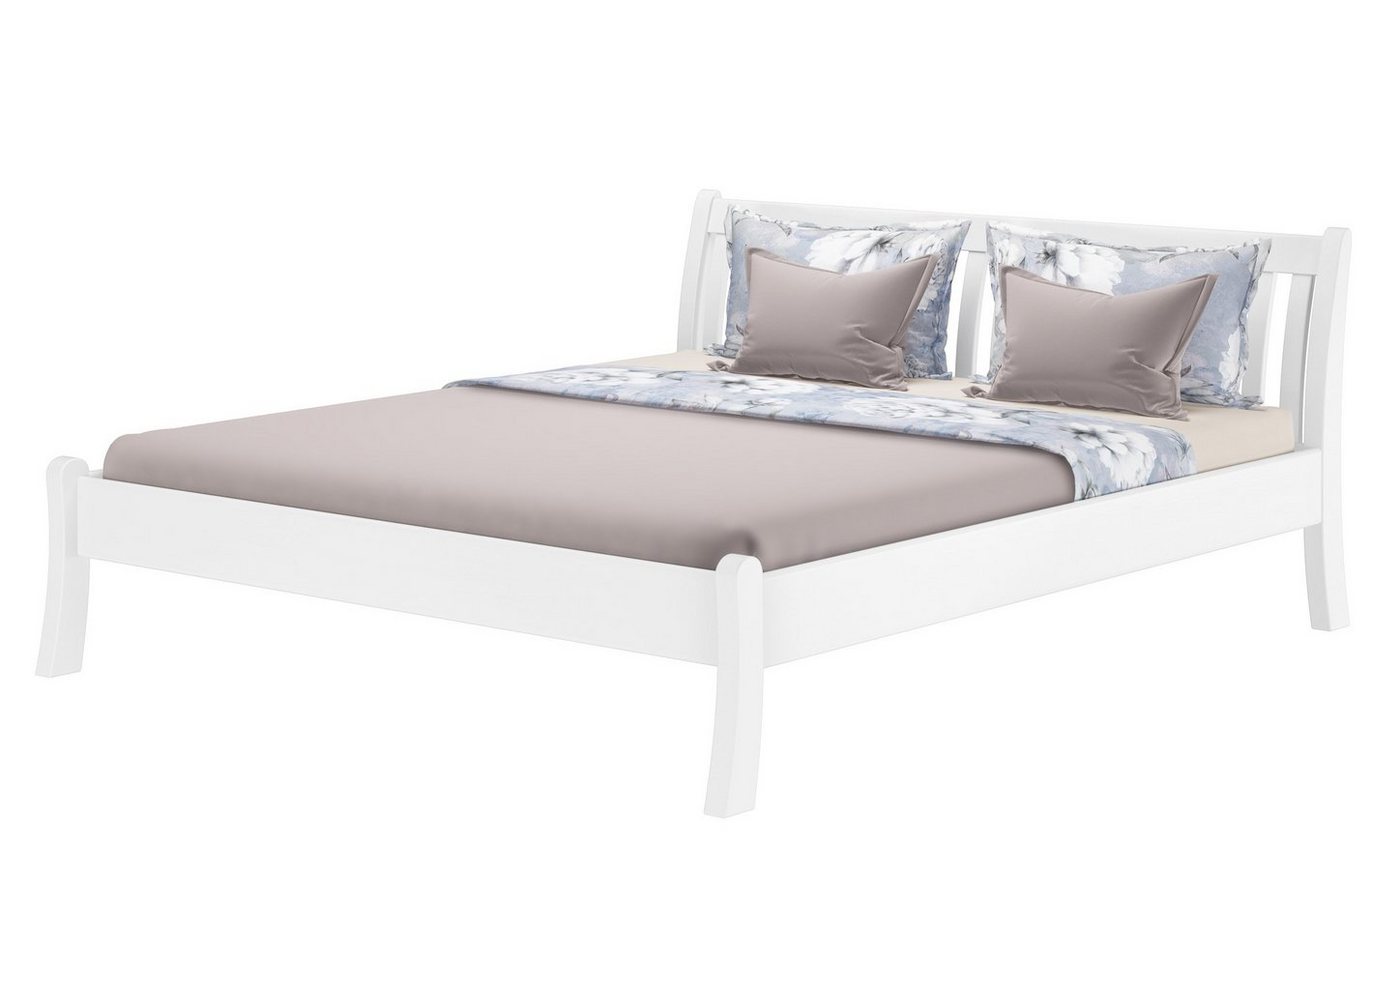 ERST-HOLZ Bett Doppelbett hohe Sitzkante Kiefer weiß 180x200 cm, Kieferwaschweiß von ERST-HOLZ